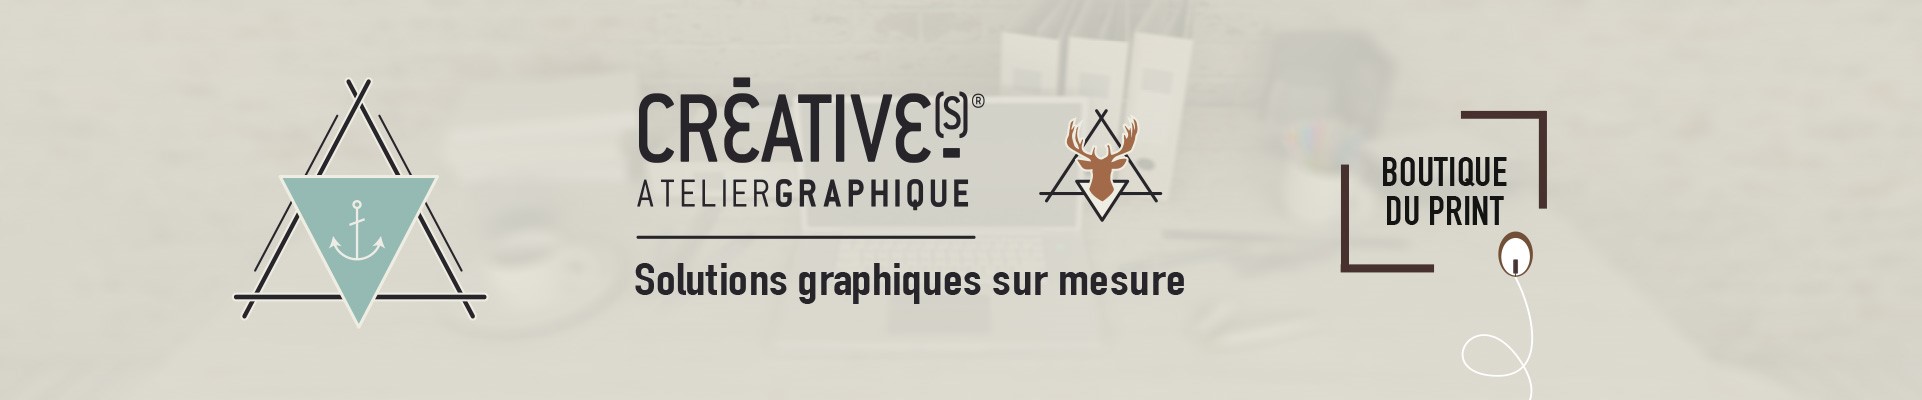 Creatives Atelier Graphique Lyon studio de création graphique sur mesure